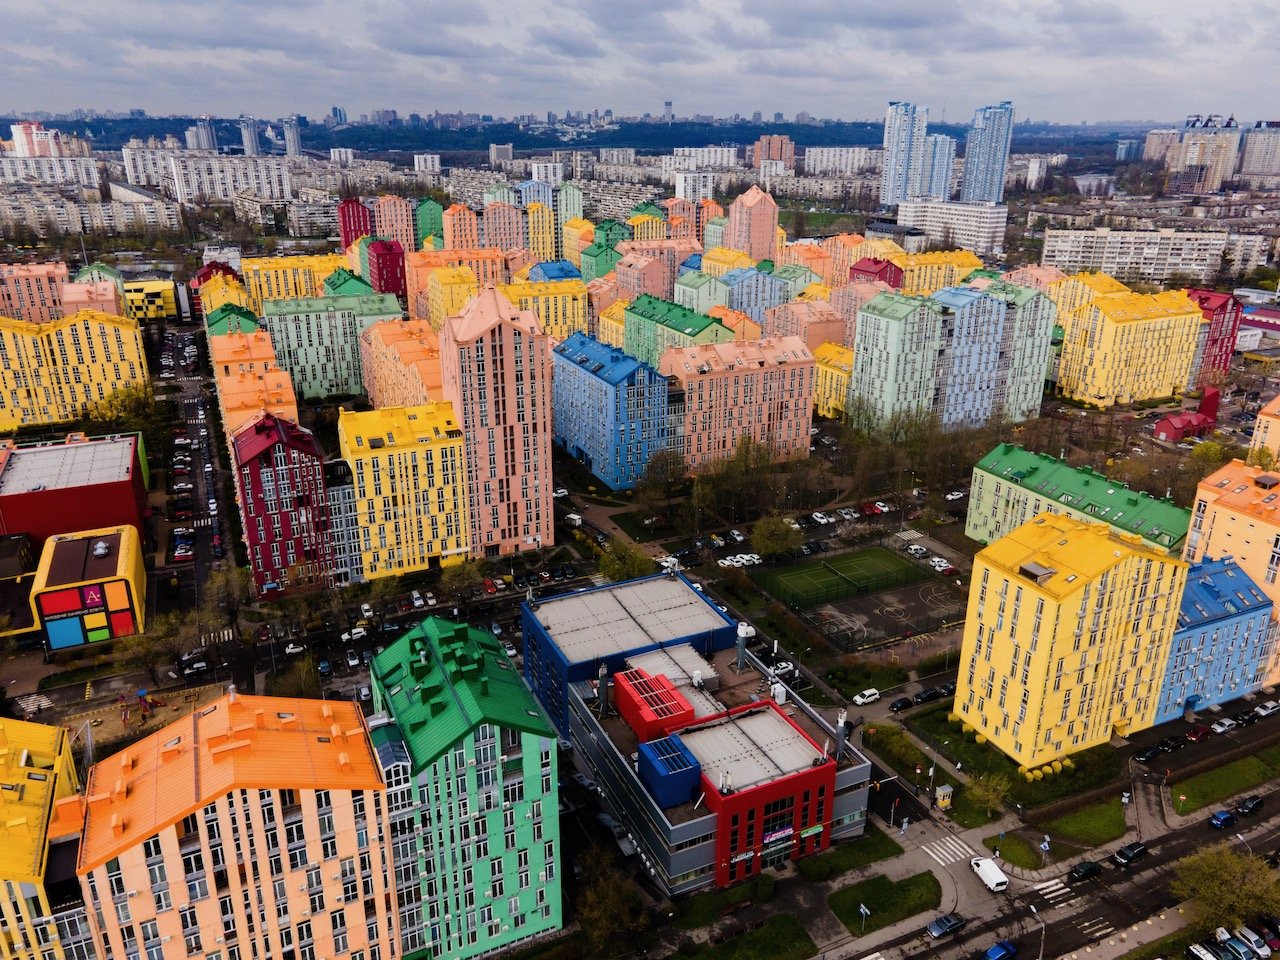   Comfort Town, Kiev, Ukraine (ISO 100, 4.5 mm,  f /2.8, 1/50 s)  